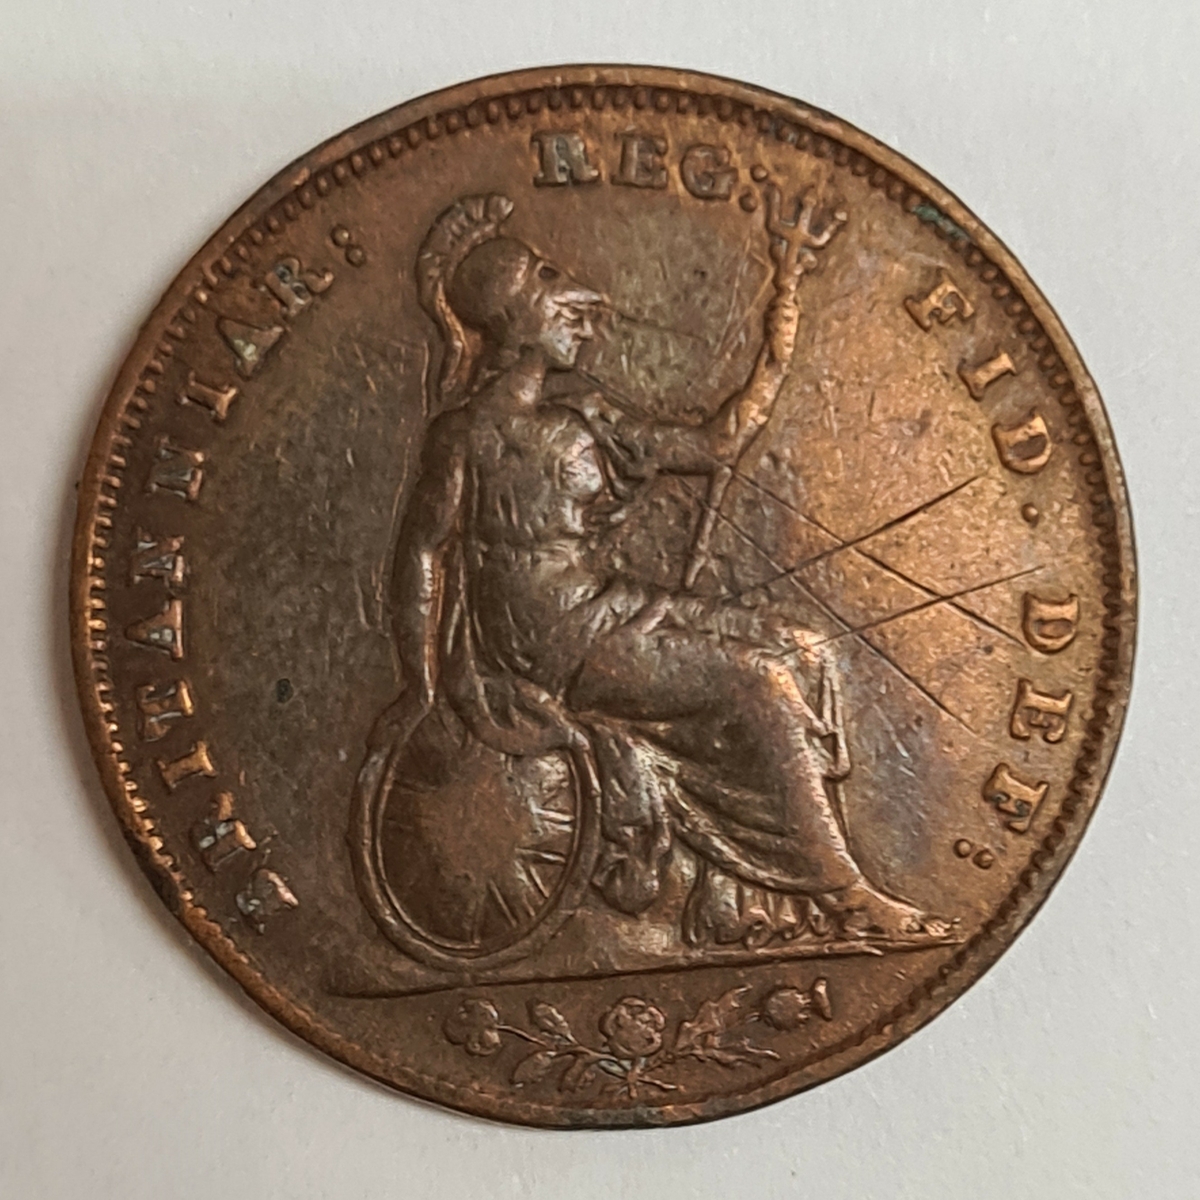 3 mynt från Storbritanien/England.
Farthing 1847
Farthing 1859
Farthing 1851